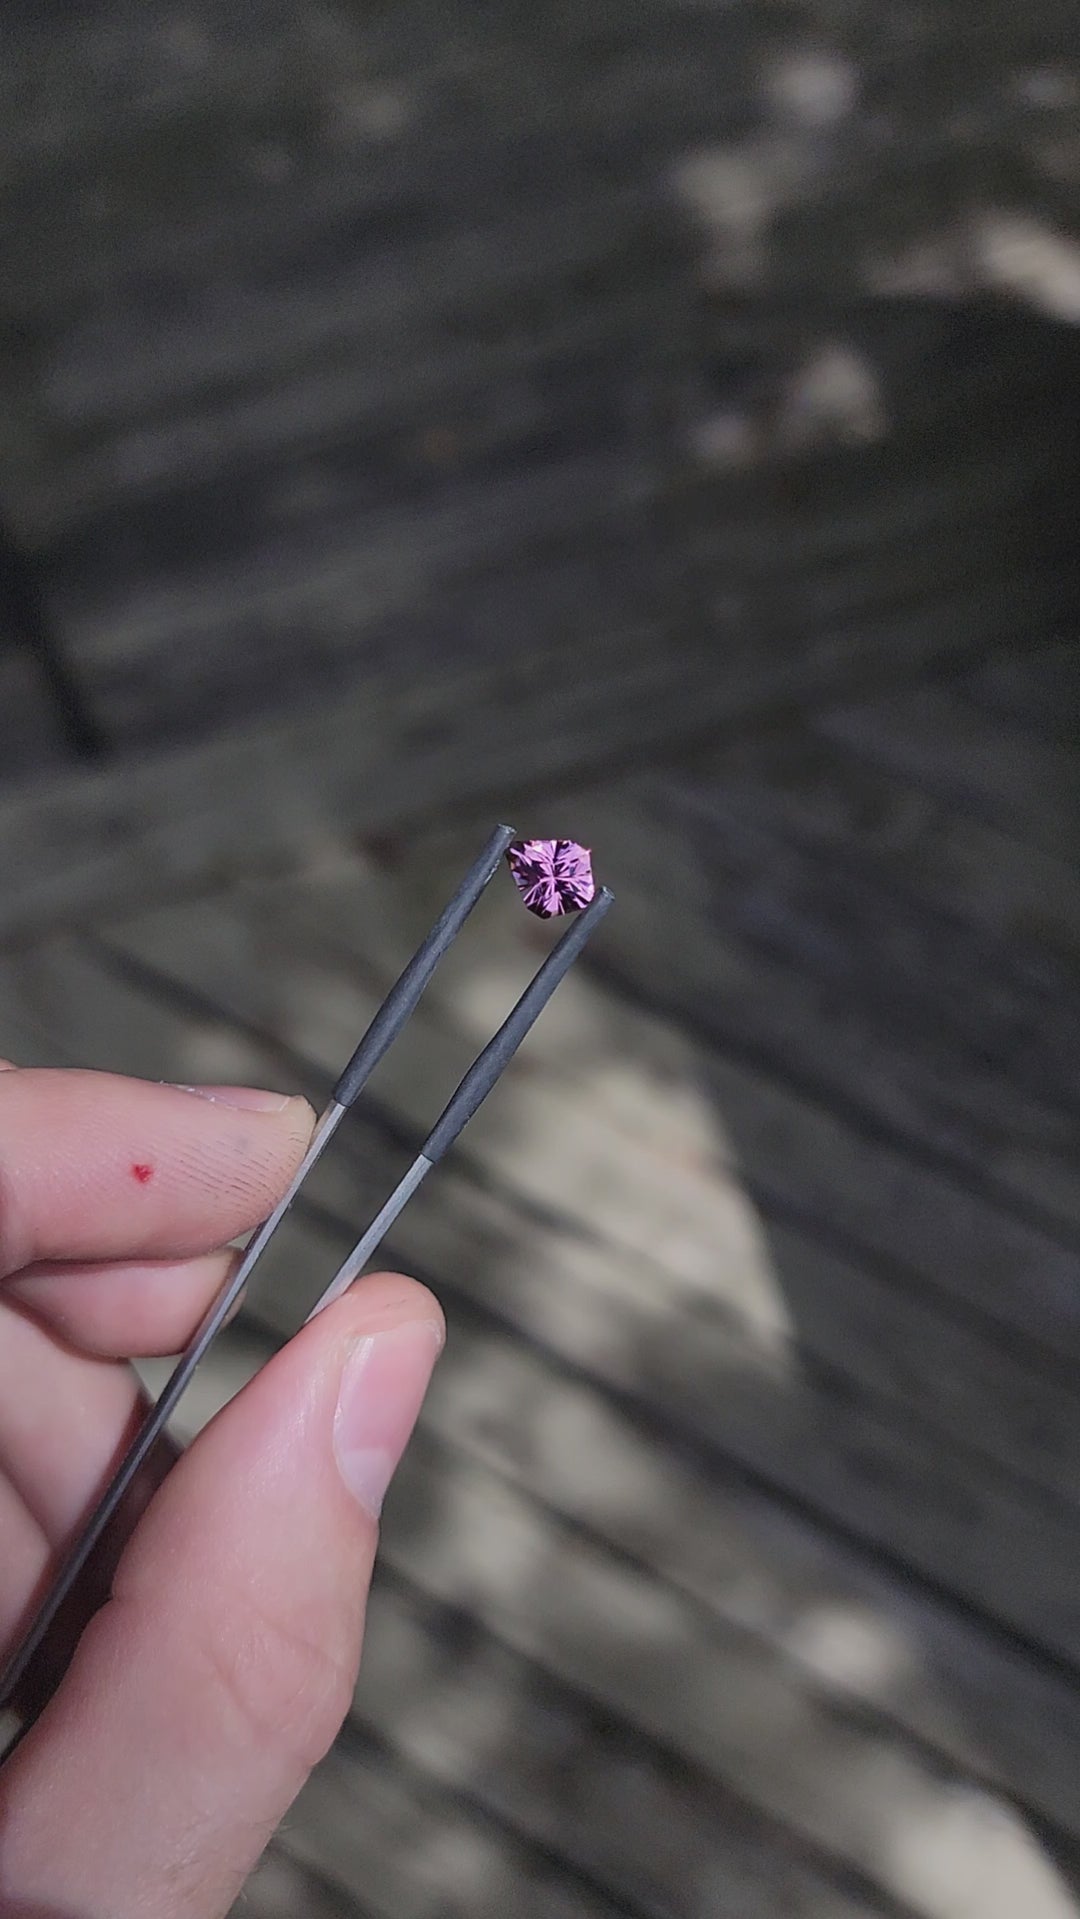 2.1 Carat Pink Tourmaline Kite - 8.5x6.9mm